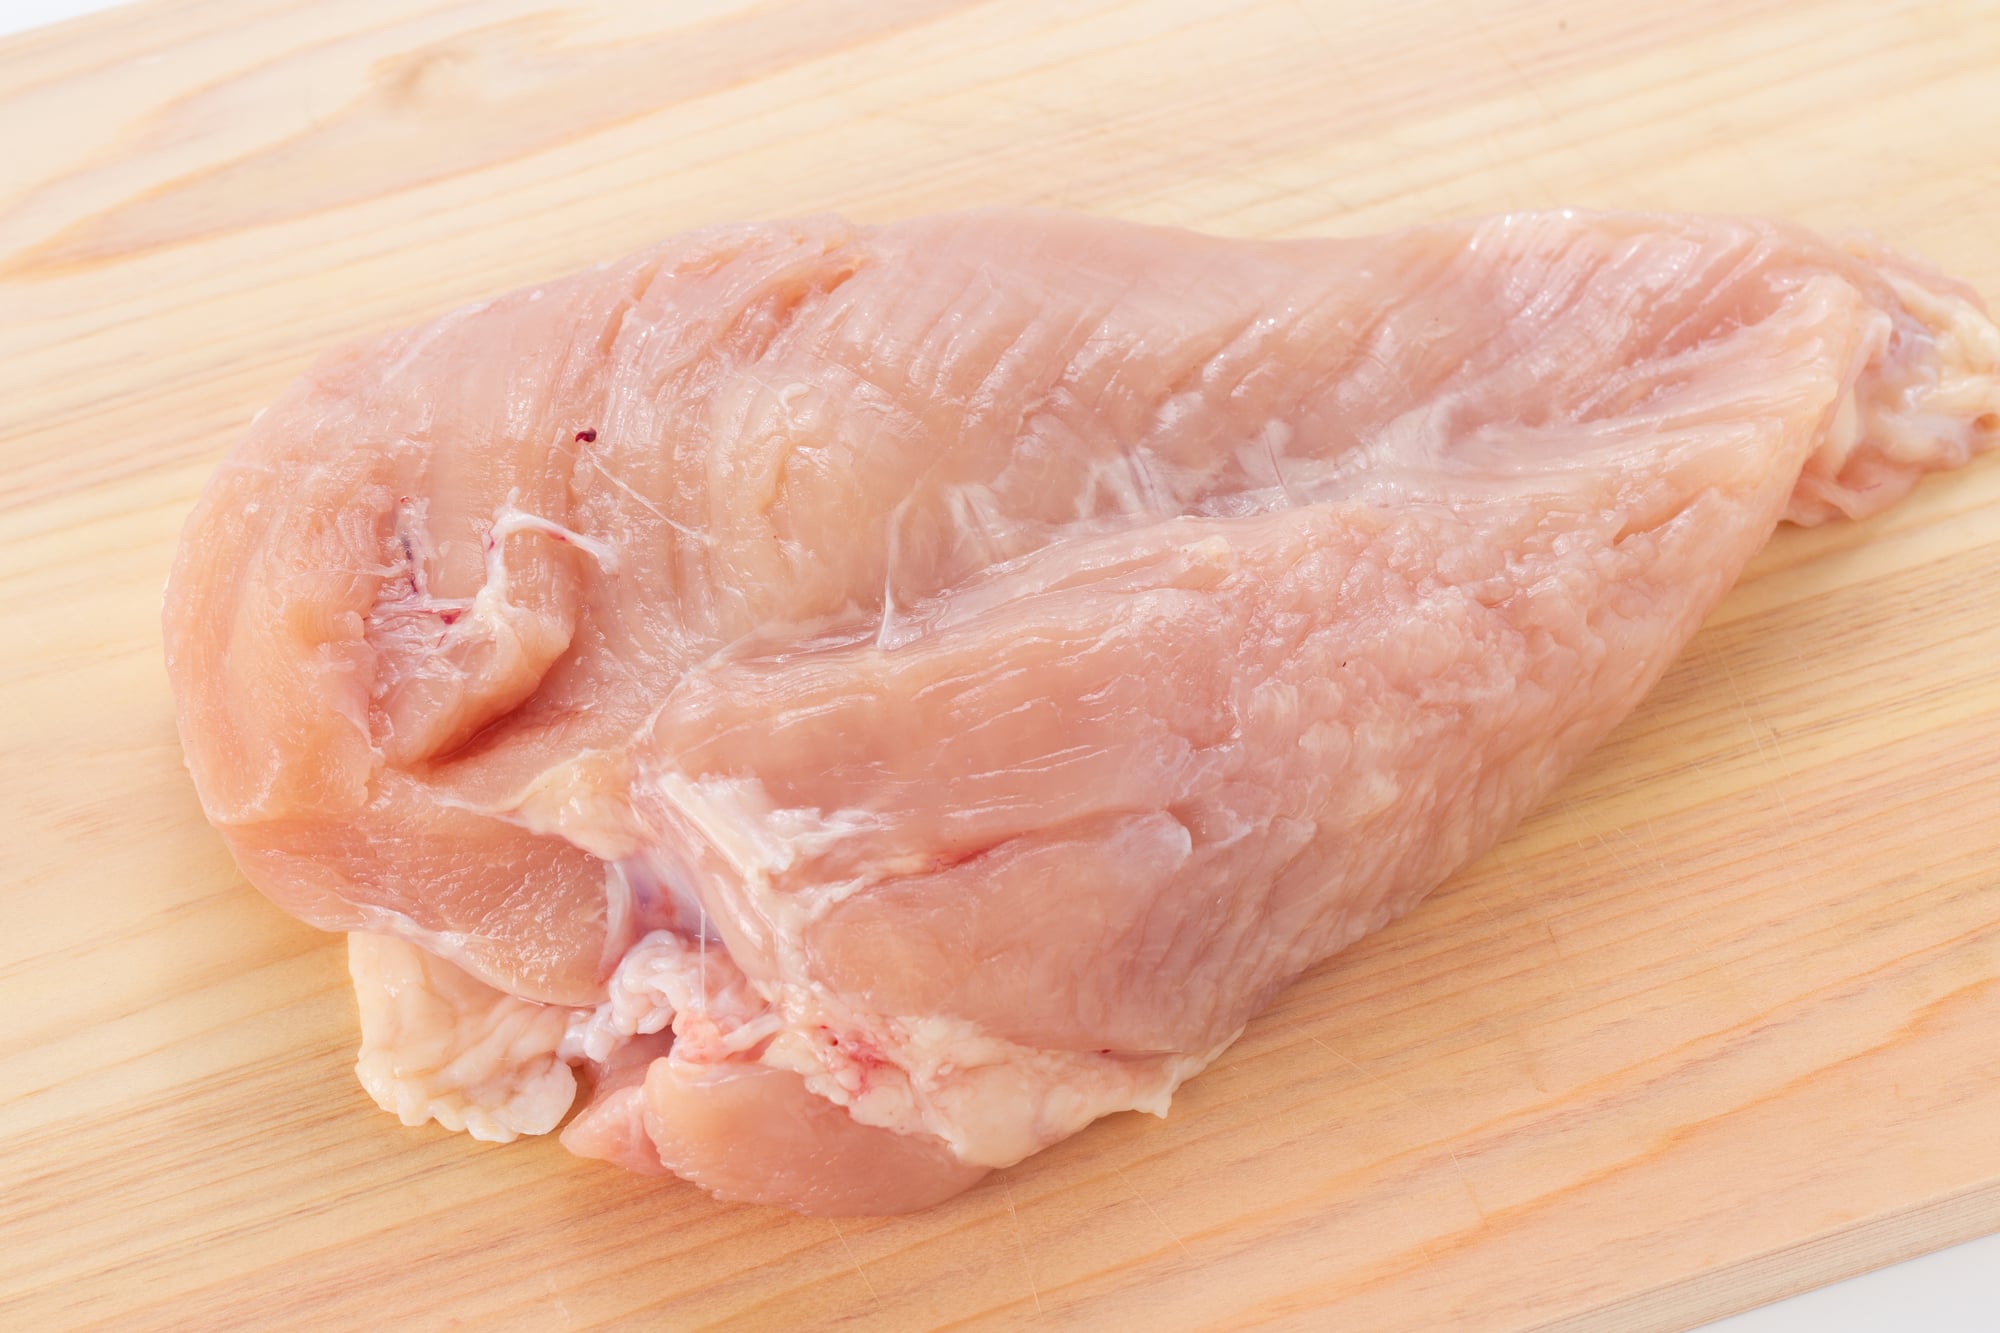 鶏むね肉をおいしく簡単に調理するおすすめレシピ 育ちざかりのお子さんがいる家庭で大活躍間違いなし ママスタセレクト